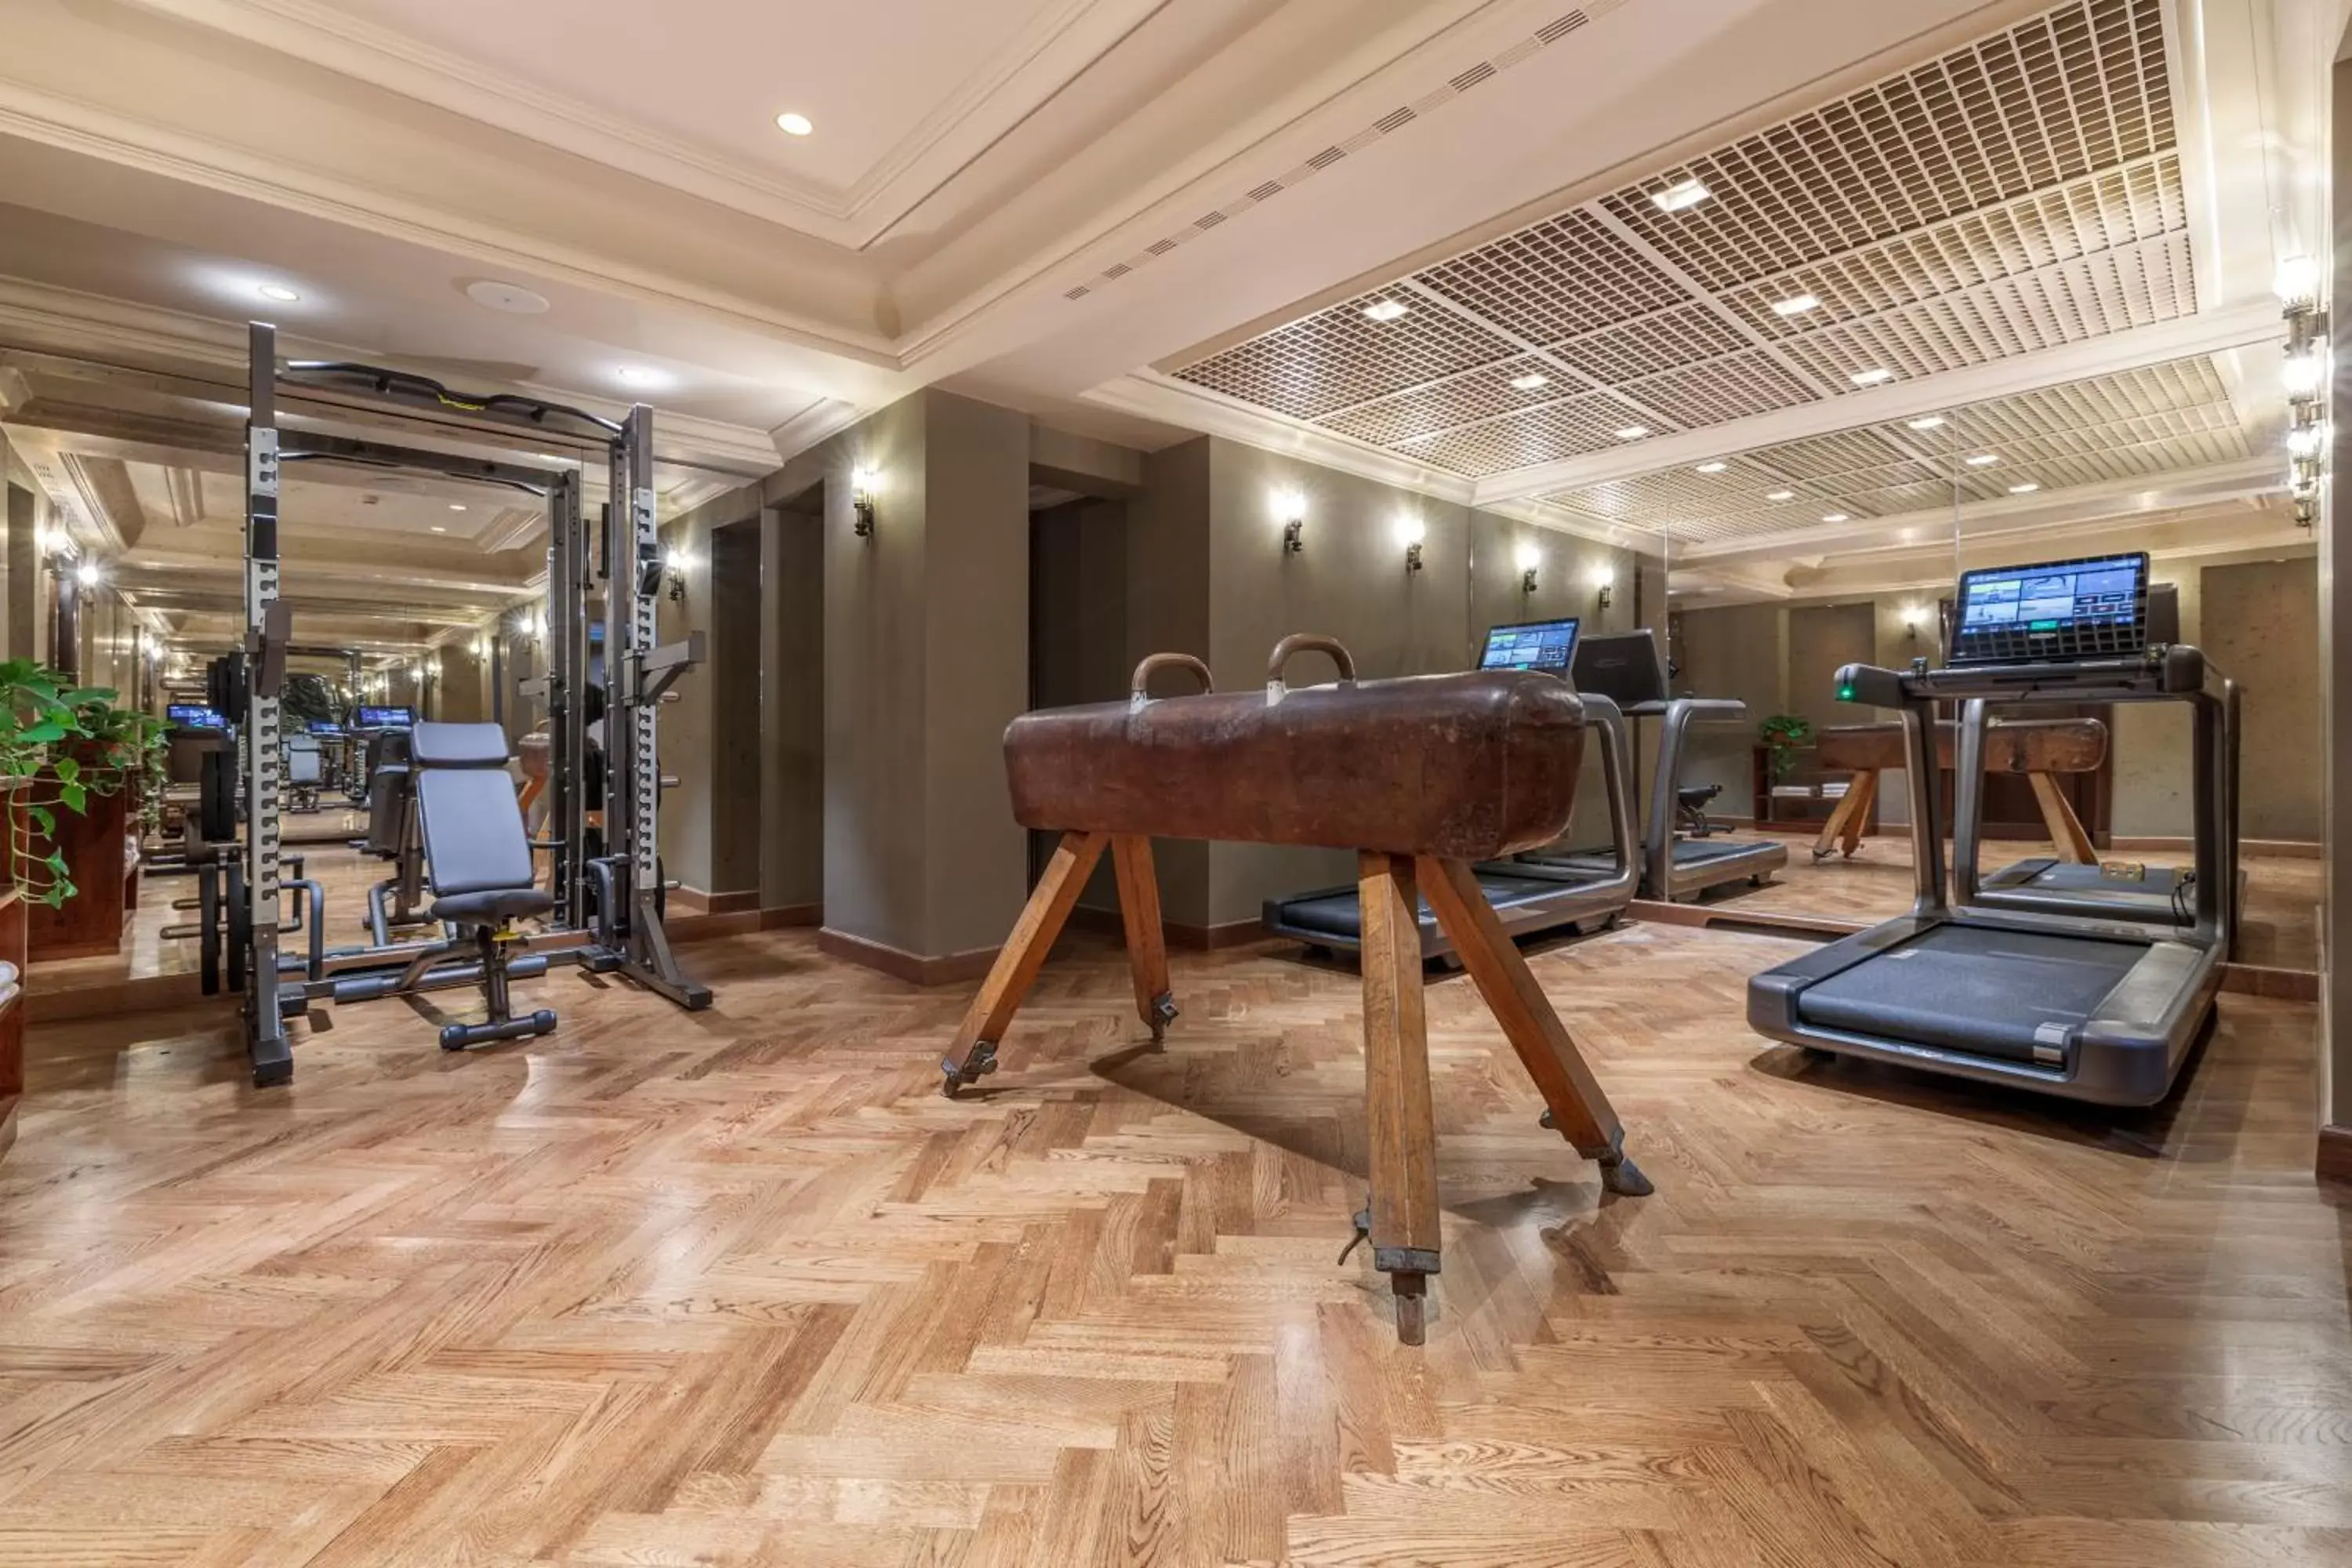 Fitness centre/facilities, Fitness Center/Facilities in Hotel Locarno